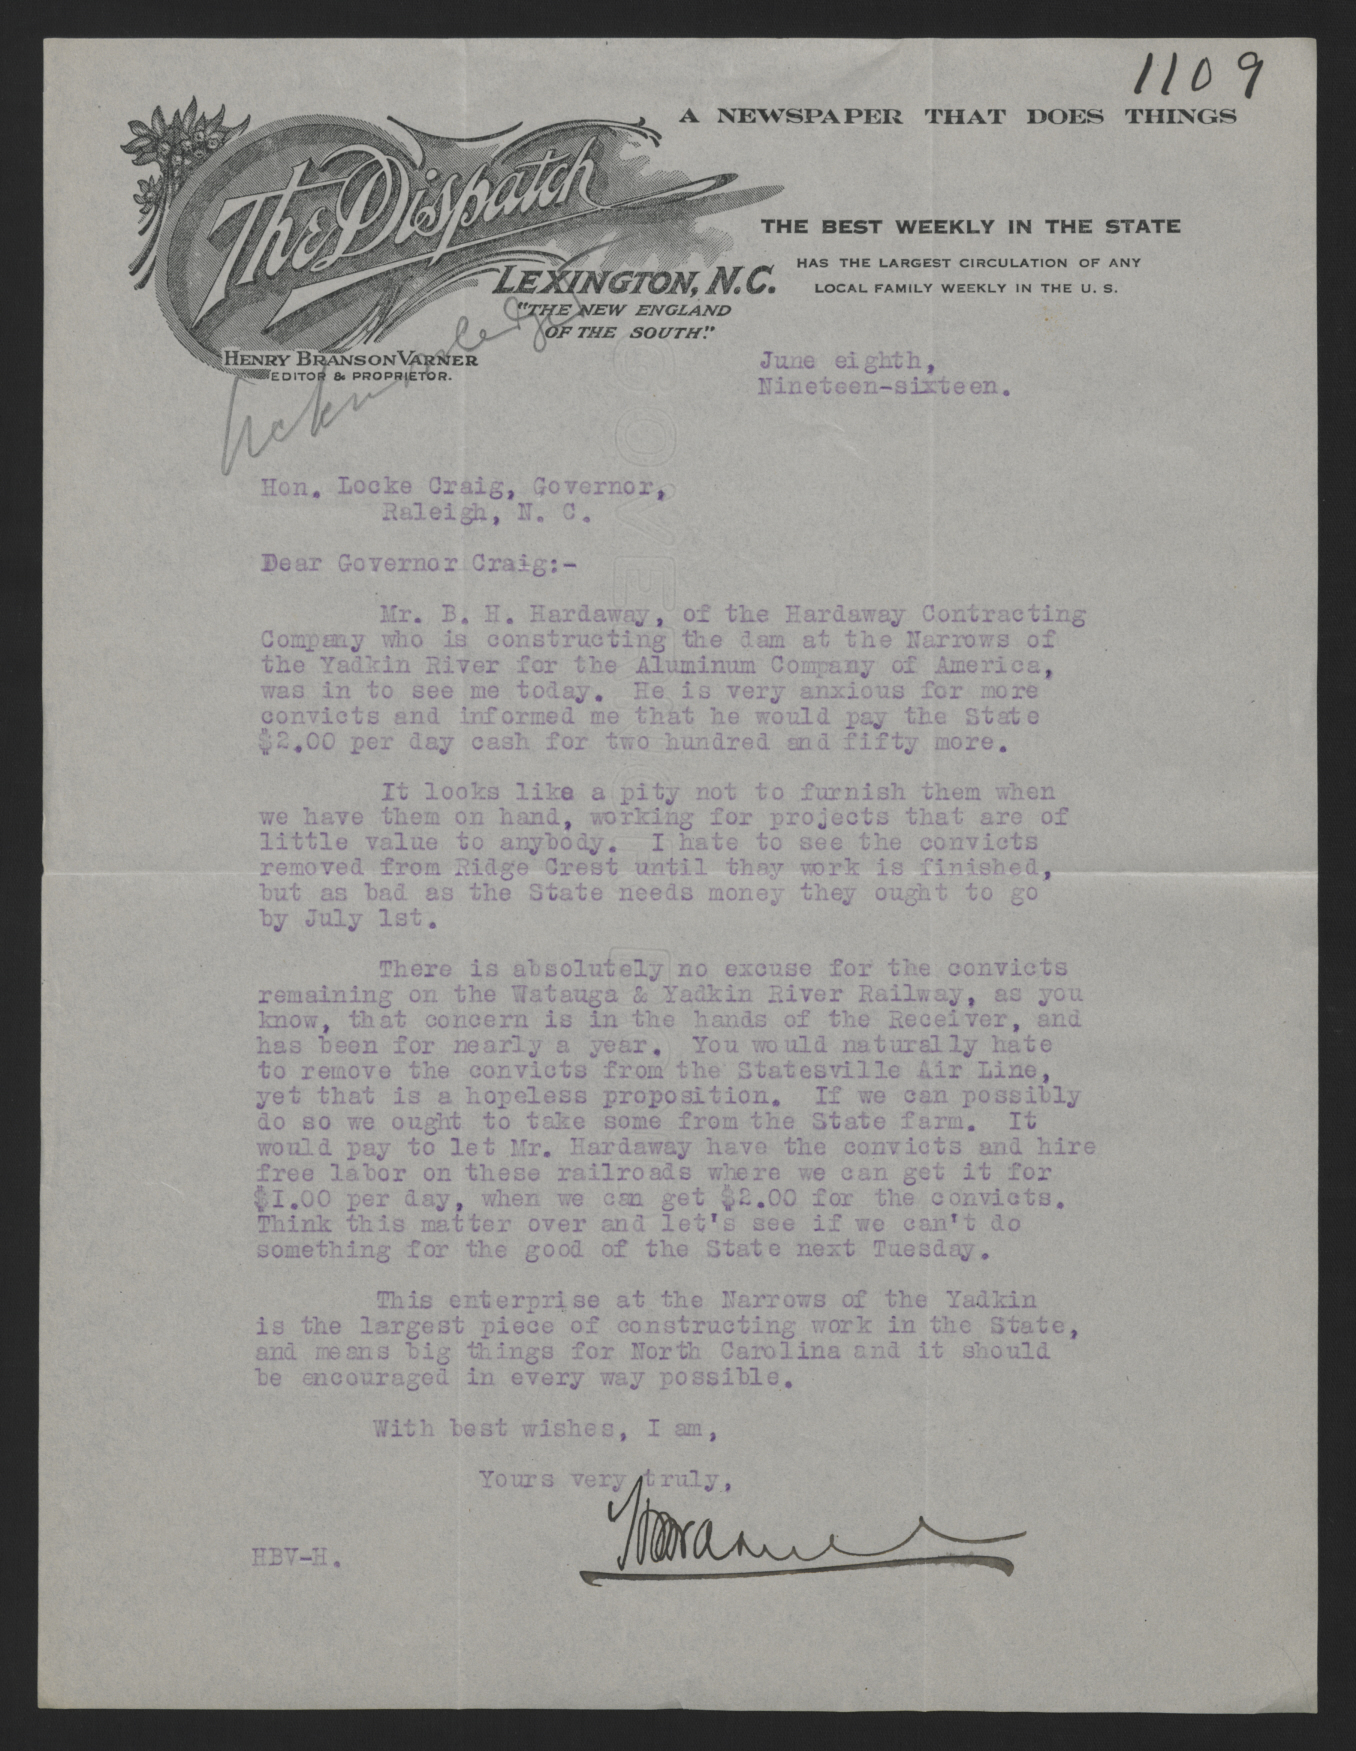 Letter from Varner to Craig, June 8, 1916